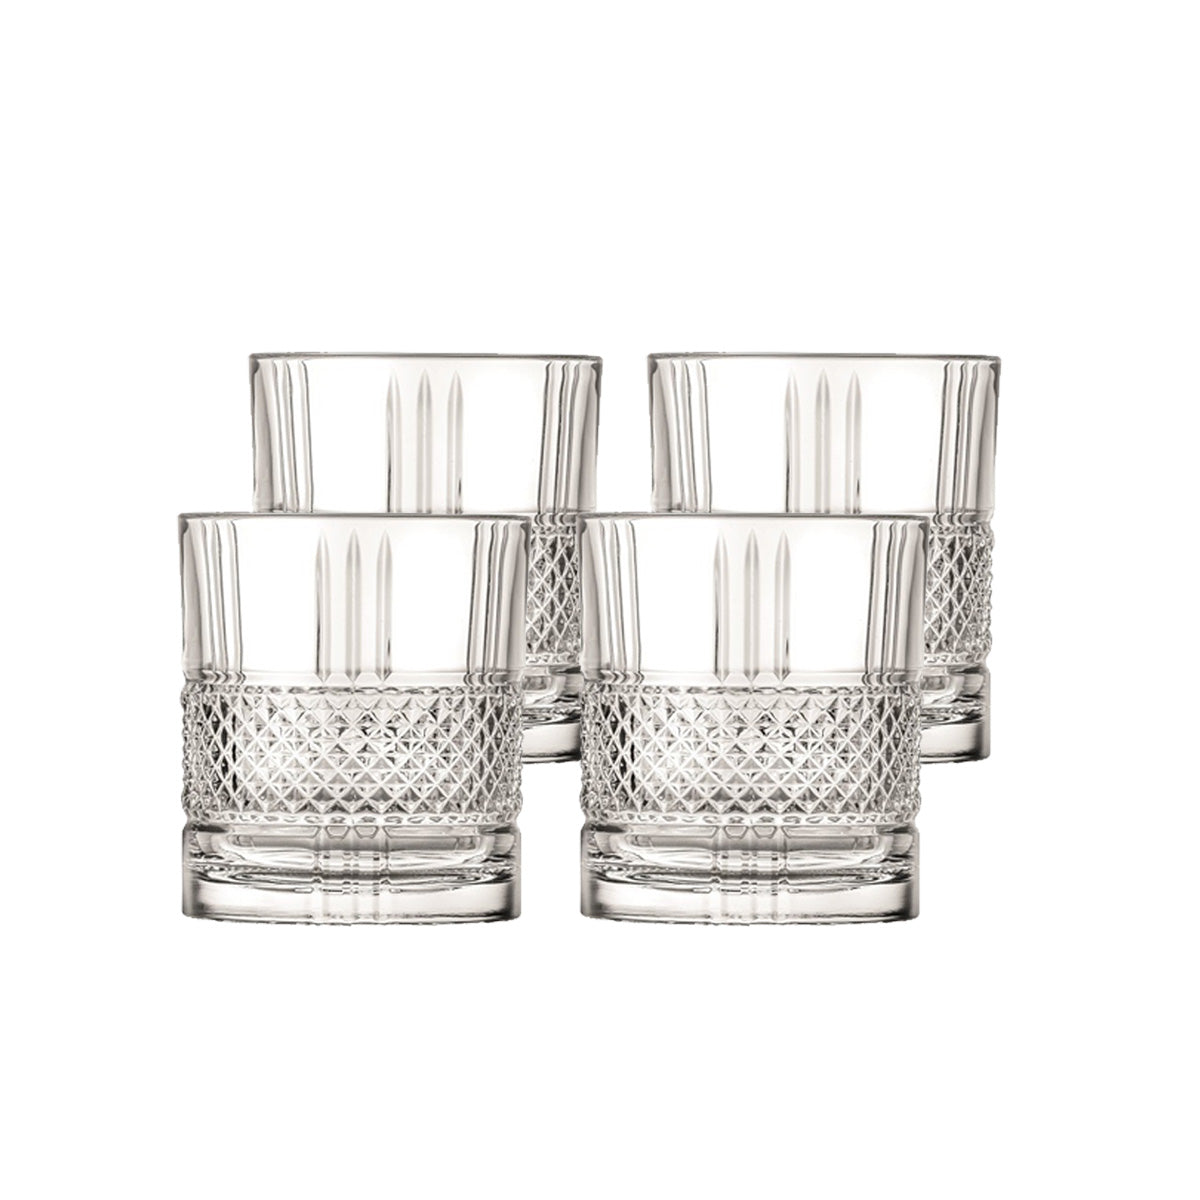 Whiskybecher Trinkglas Becher Brillante 4er Set 340ml